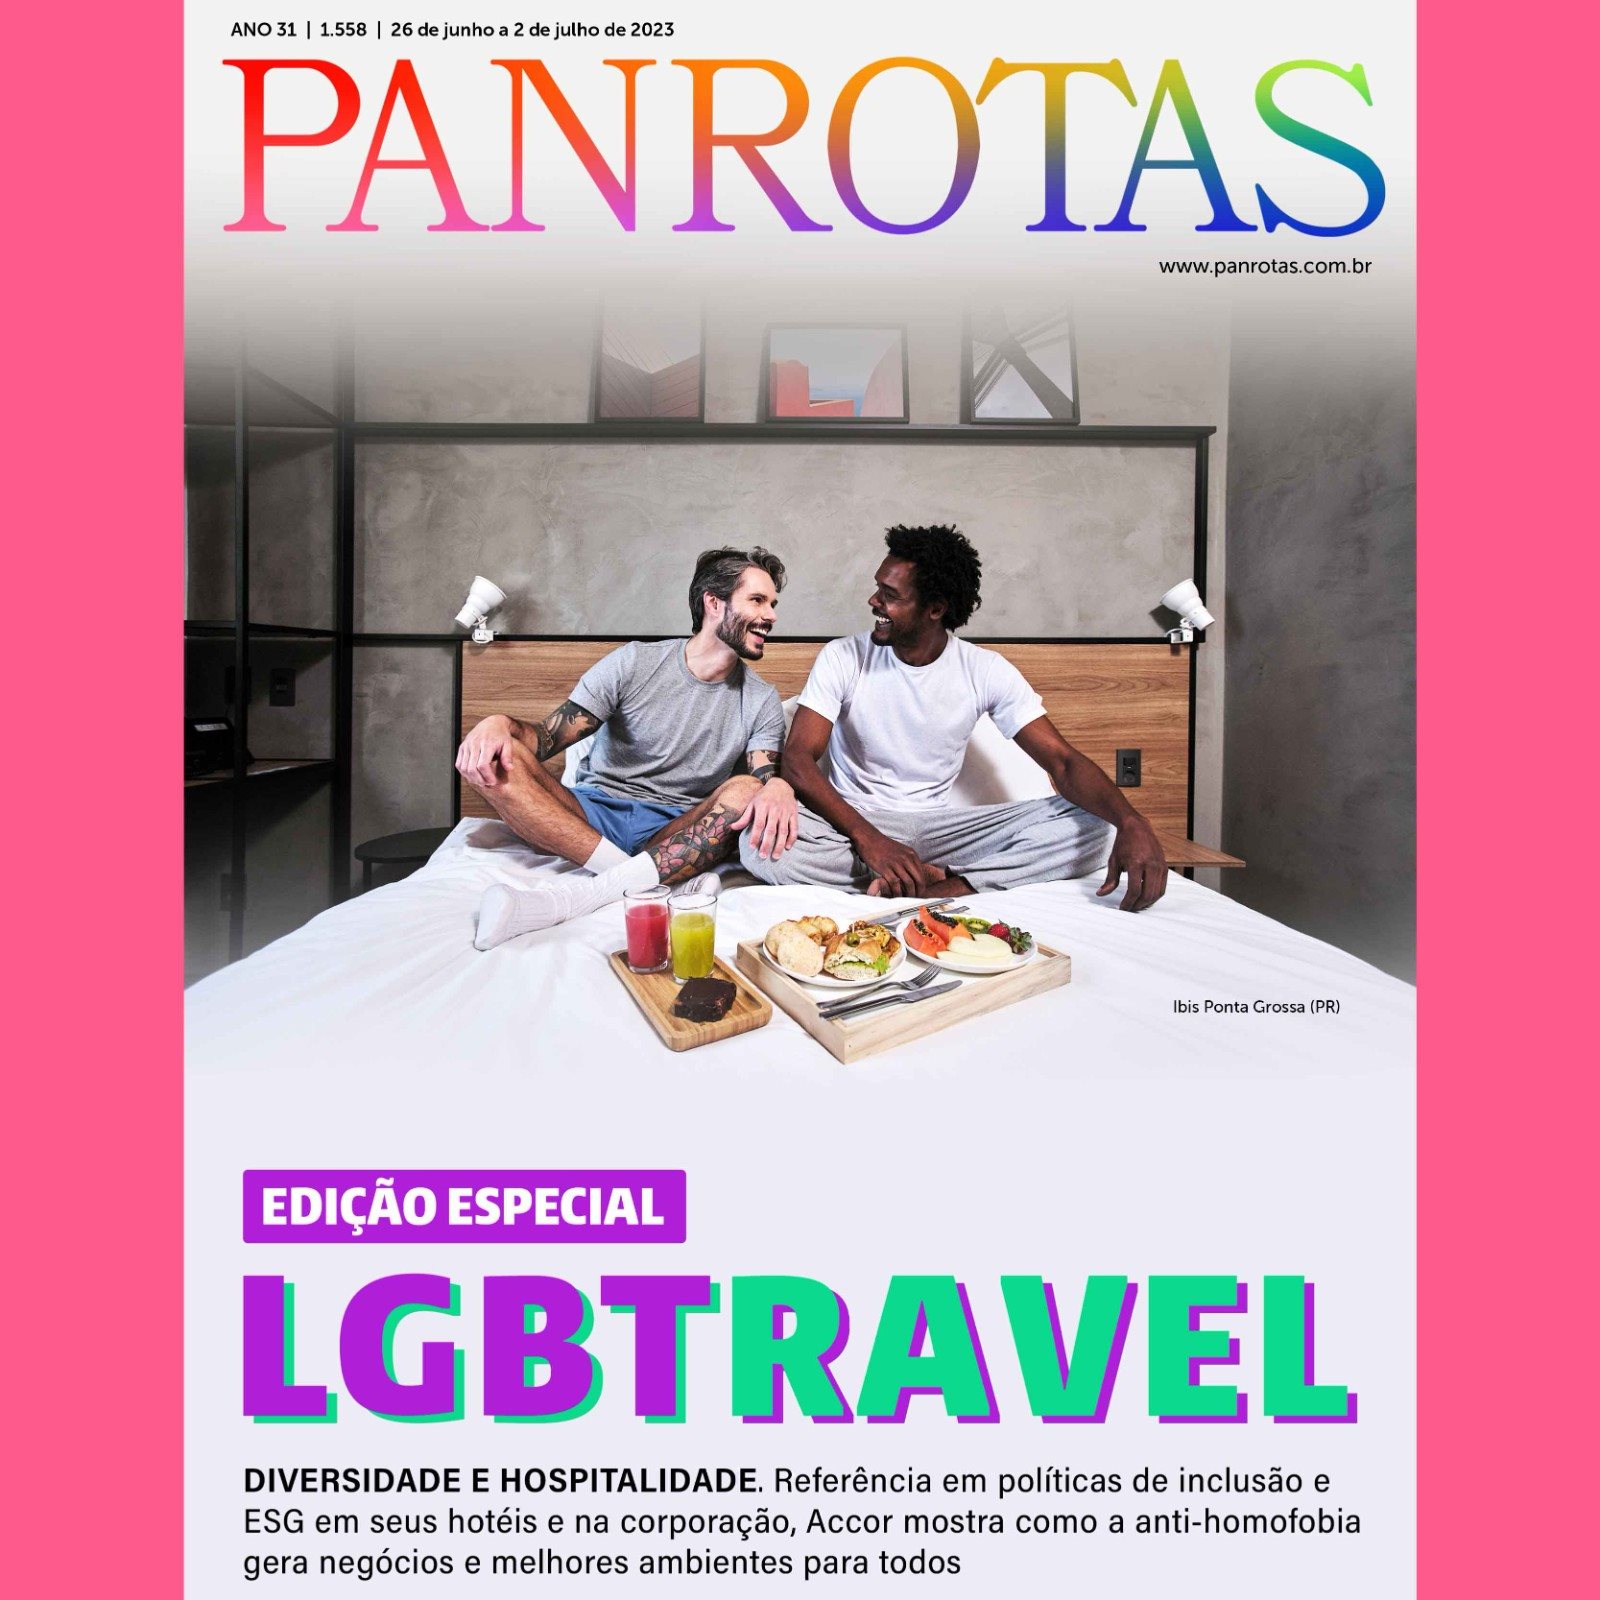 Revista PANROTAS LGBTravel é lançada nesta semana, aproveitando data comemorativa: 28 junho é o Dia do Orgulho LGBT+